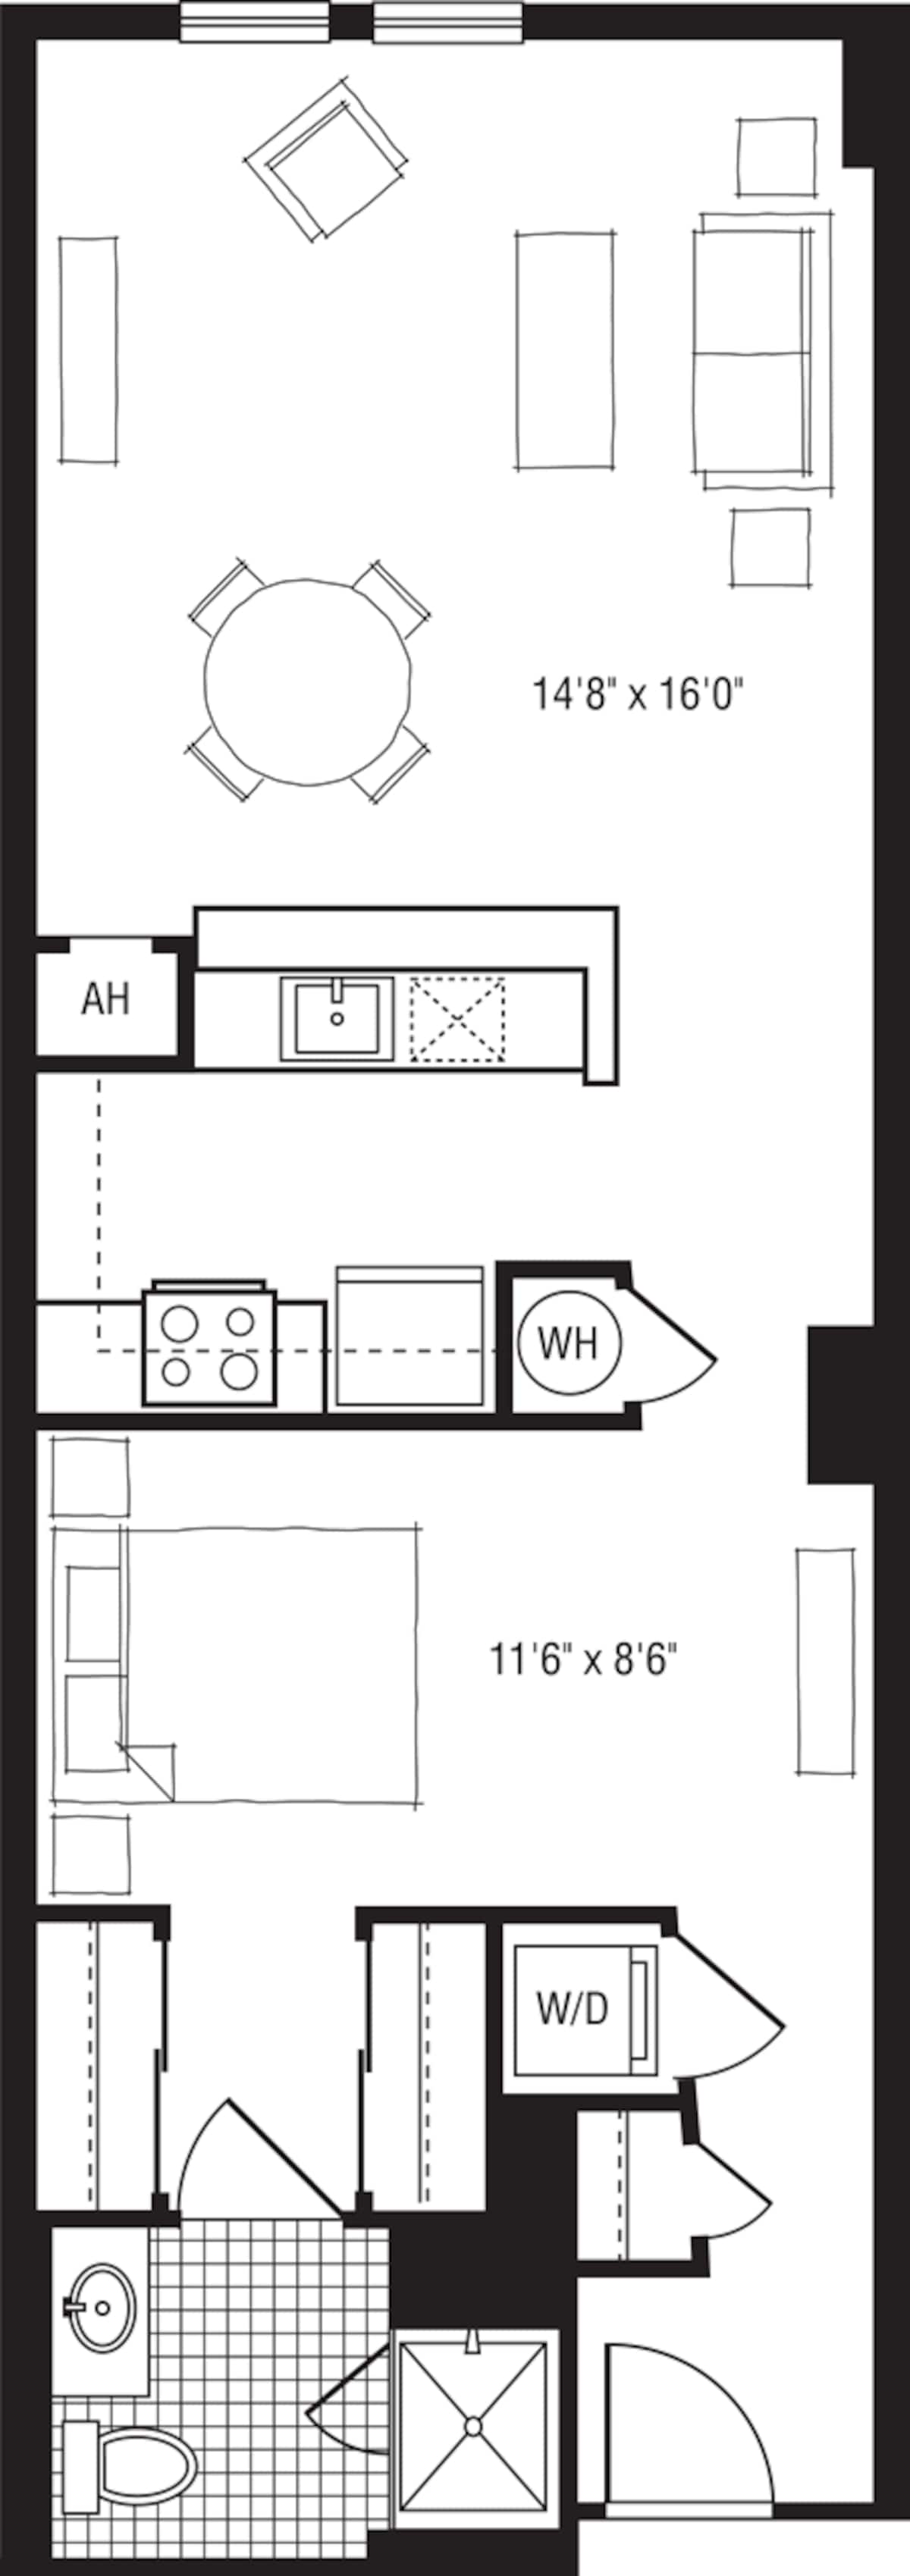 Floorplan diagram for 1UY, showing Studio